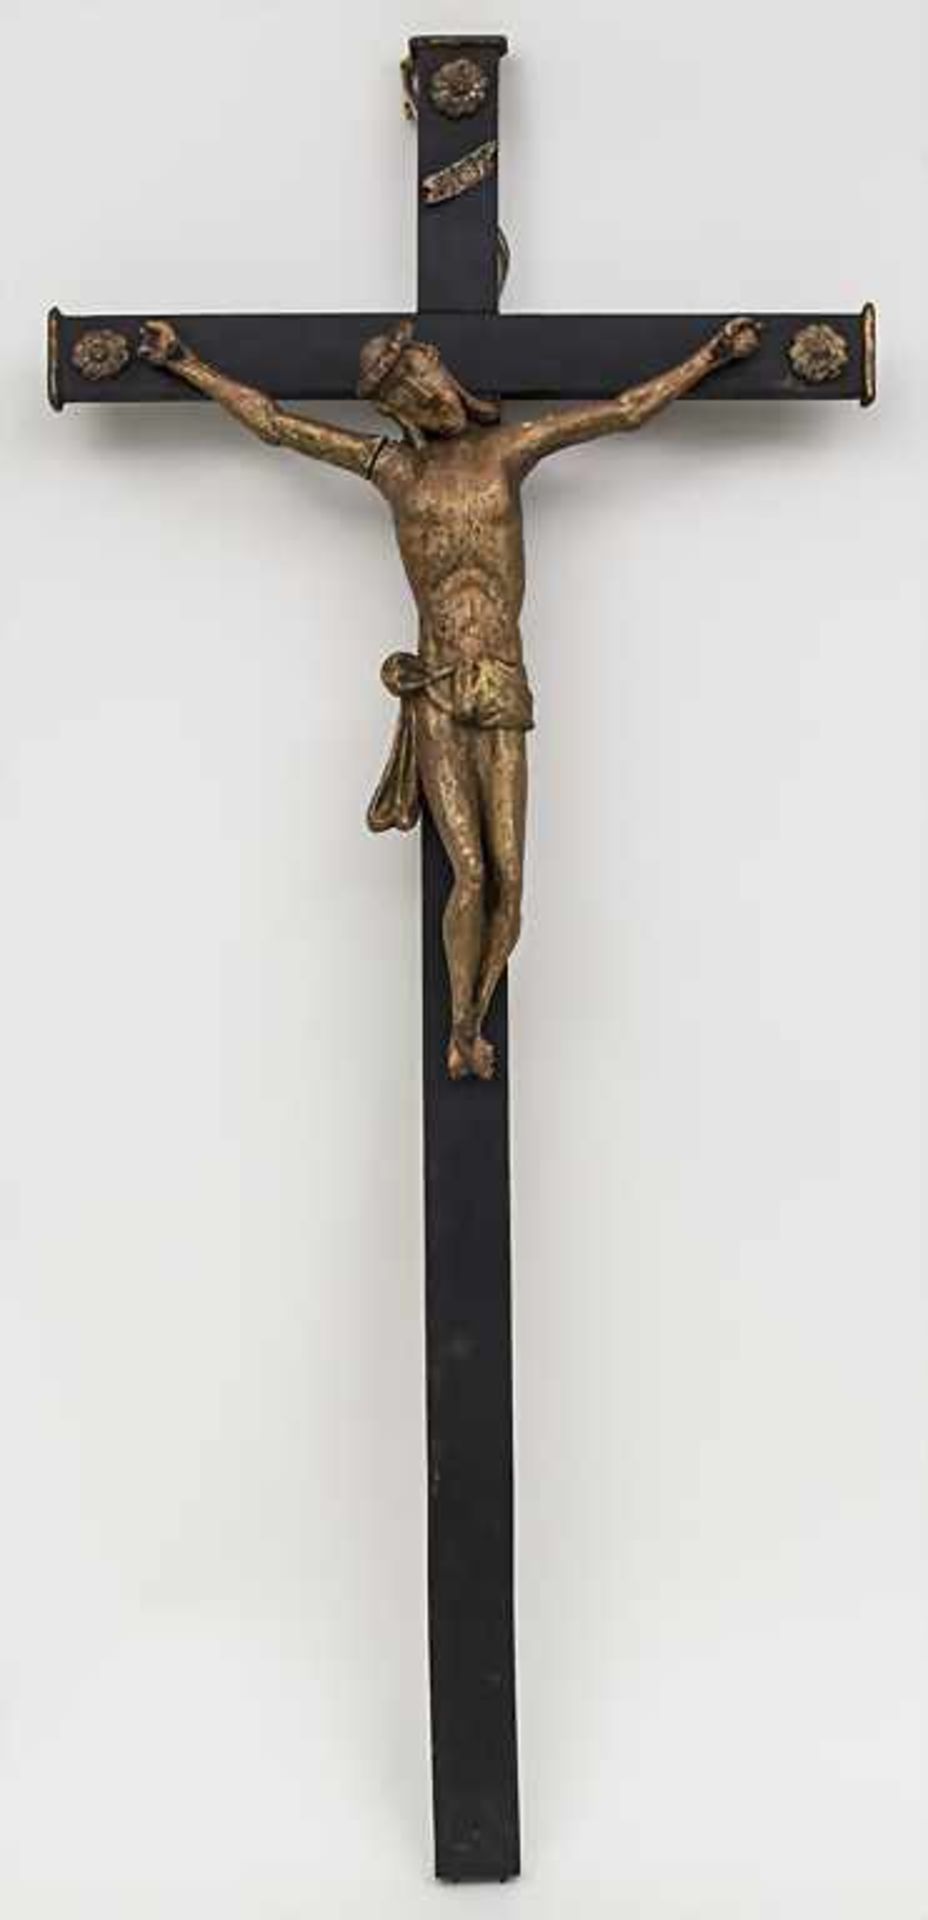 Wandkruzifix / A wall crucifix, Ende 19. Jh. Material: Holz, geschnitzt, farbig staffiert, Kreuz